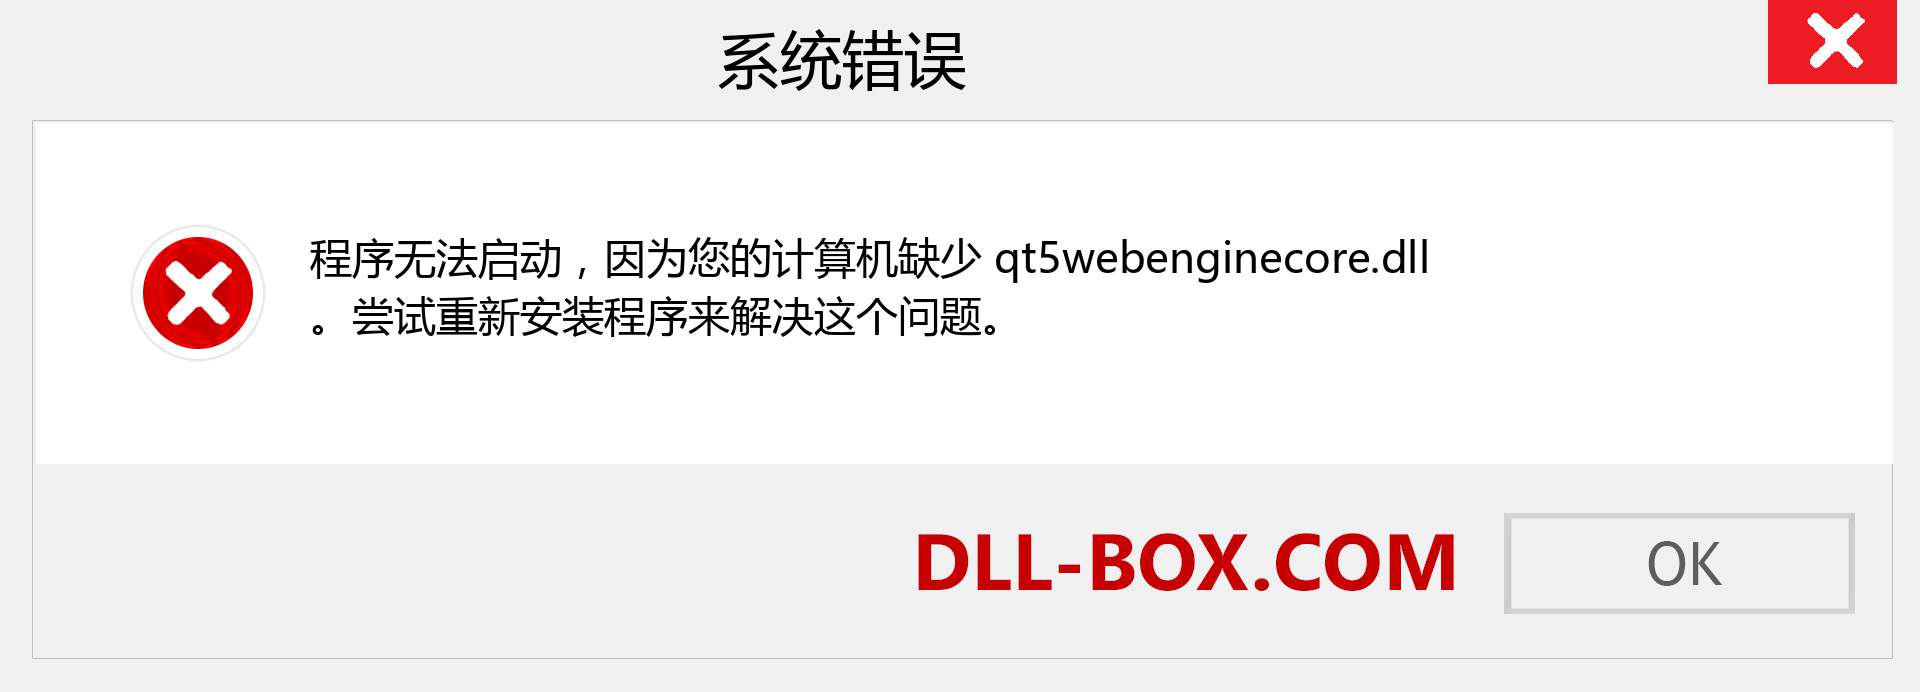 qt5webenginecore.dll 文件丢失？。 适用于 Windows 7、8、10 的下载 - 修复 Windows、照片、图像上的 qt5webenginecore dll 丢失错误